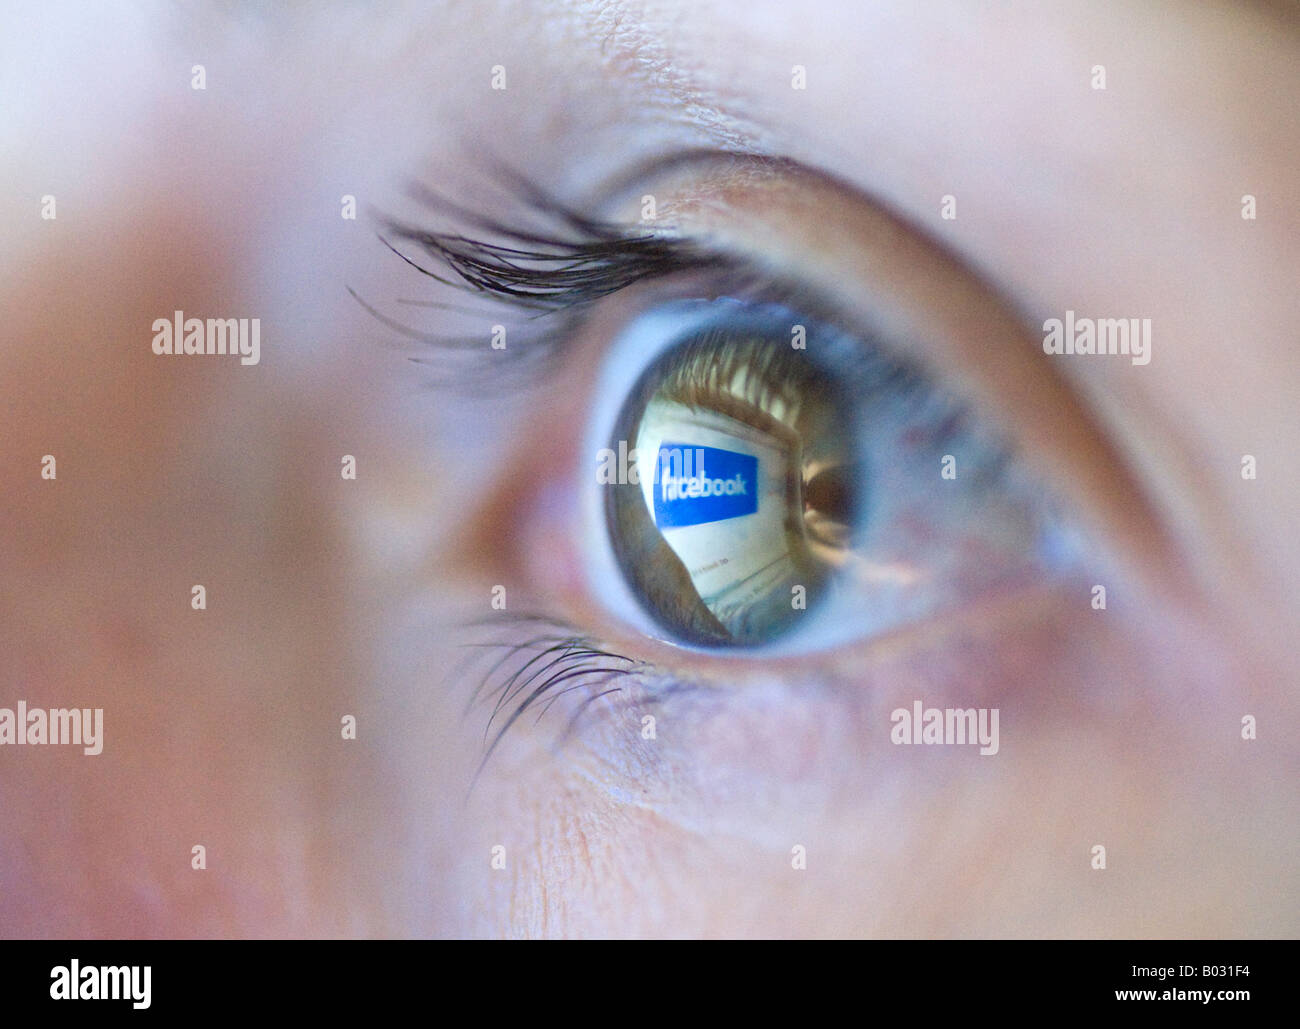 Facebook sito internet logo è riflessa dallo schermo del computer sulla donna s eye 2008 Foto Stock